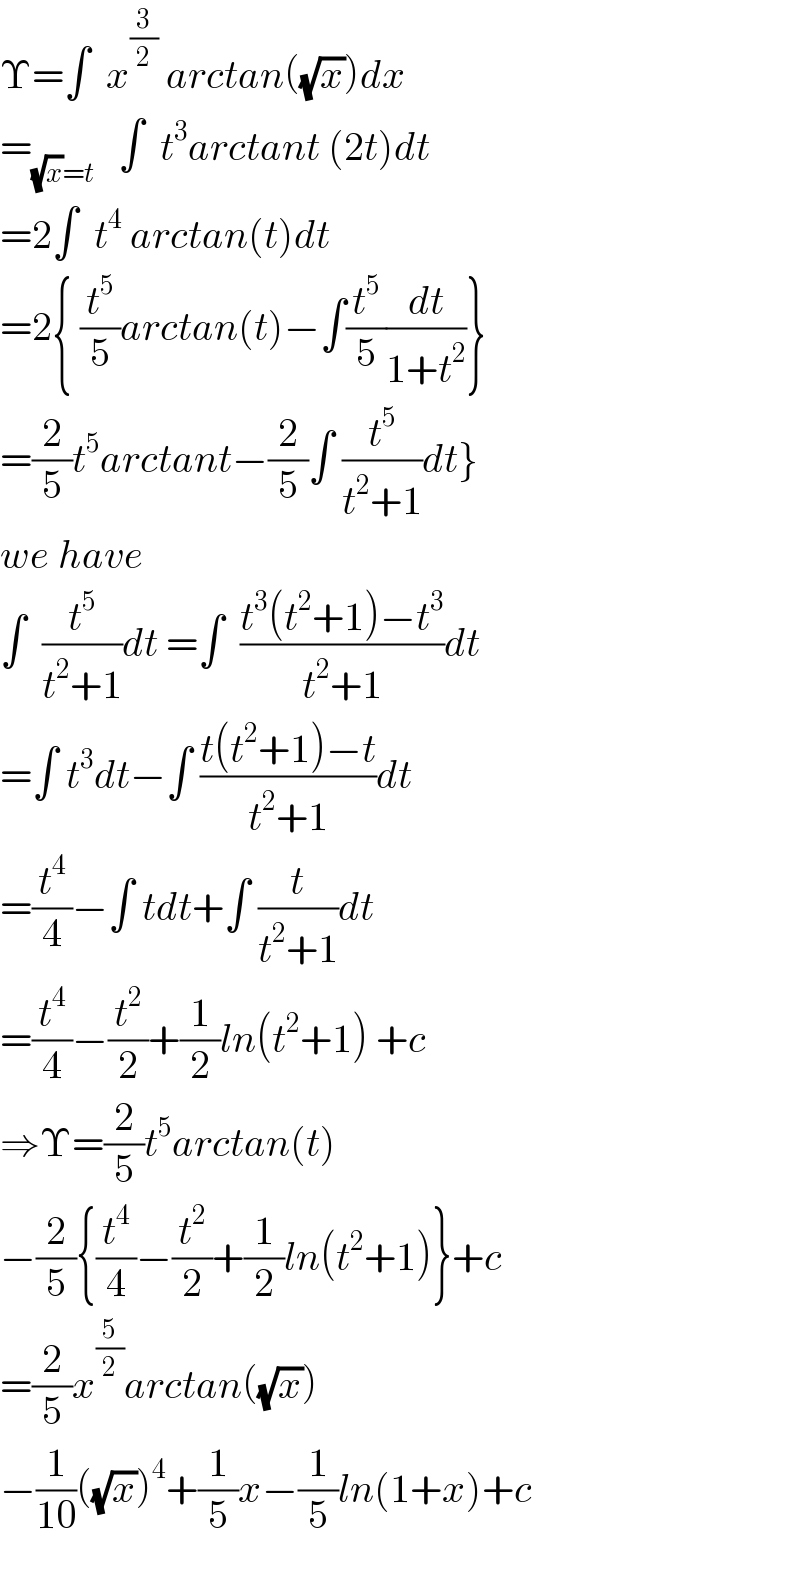 Υ=∫  x^(3/2)  arctan((√x))dx  =_((√x)=t)    ∫  t^3 arctant (2t)dt  =2∫  t^4  arctan(t)dt  =2{ (t^5 /5)arctan(t)−∫(t^5 /5)(dt/(1+t^2 ))}  =(2/5)t^5 arctant−(2/5)∫ (t^5 /(t^2 +1))dt}  we have  ∫  (t^5 /(t^2 +1))dt =∫  ((t^3 (t^2 +1)−t^3 )/(t^2 +1))dt  =∫ t^3 dt−∫ ((t(t^2 +1)−t)/(t^2 +1))dt  =(t^4 /4)−∫ tdt+∫ (t/(t^2 +1))dt  =(t^4 /4)−(t^2 /2)+(1/2)ln(t^2 +1) +c  ⇒Υ=(2/5)t^5 arctan(t)  −(2/5){(t^4 /4)−(t^2 /2)+(1/2)ln(t^2 +1)}+c  =(2/5)x^(5/2) arctan((√x))  −(1/(10))((√x))^4 +(1/5)x−(1/5)ln(1+x)+c  